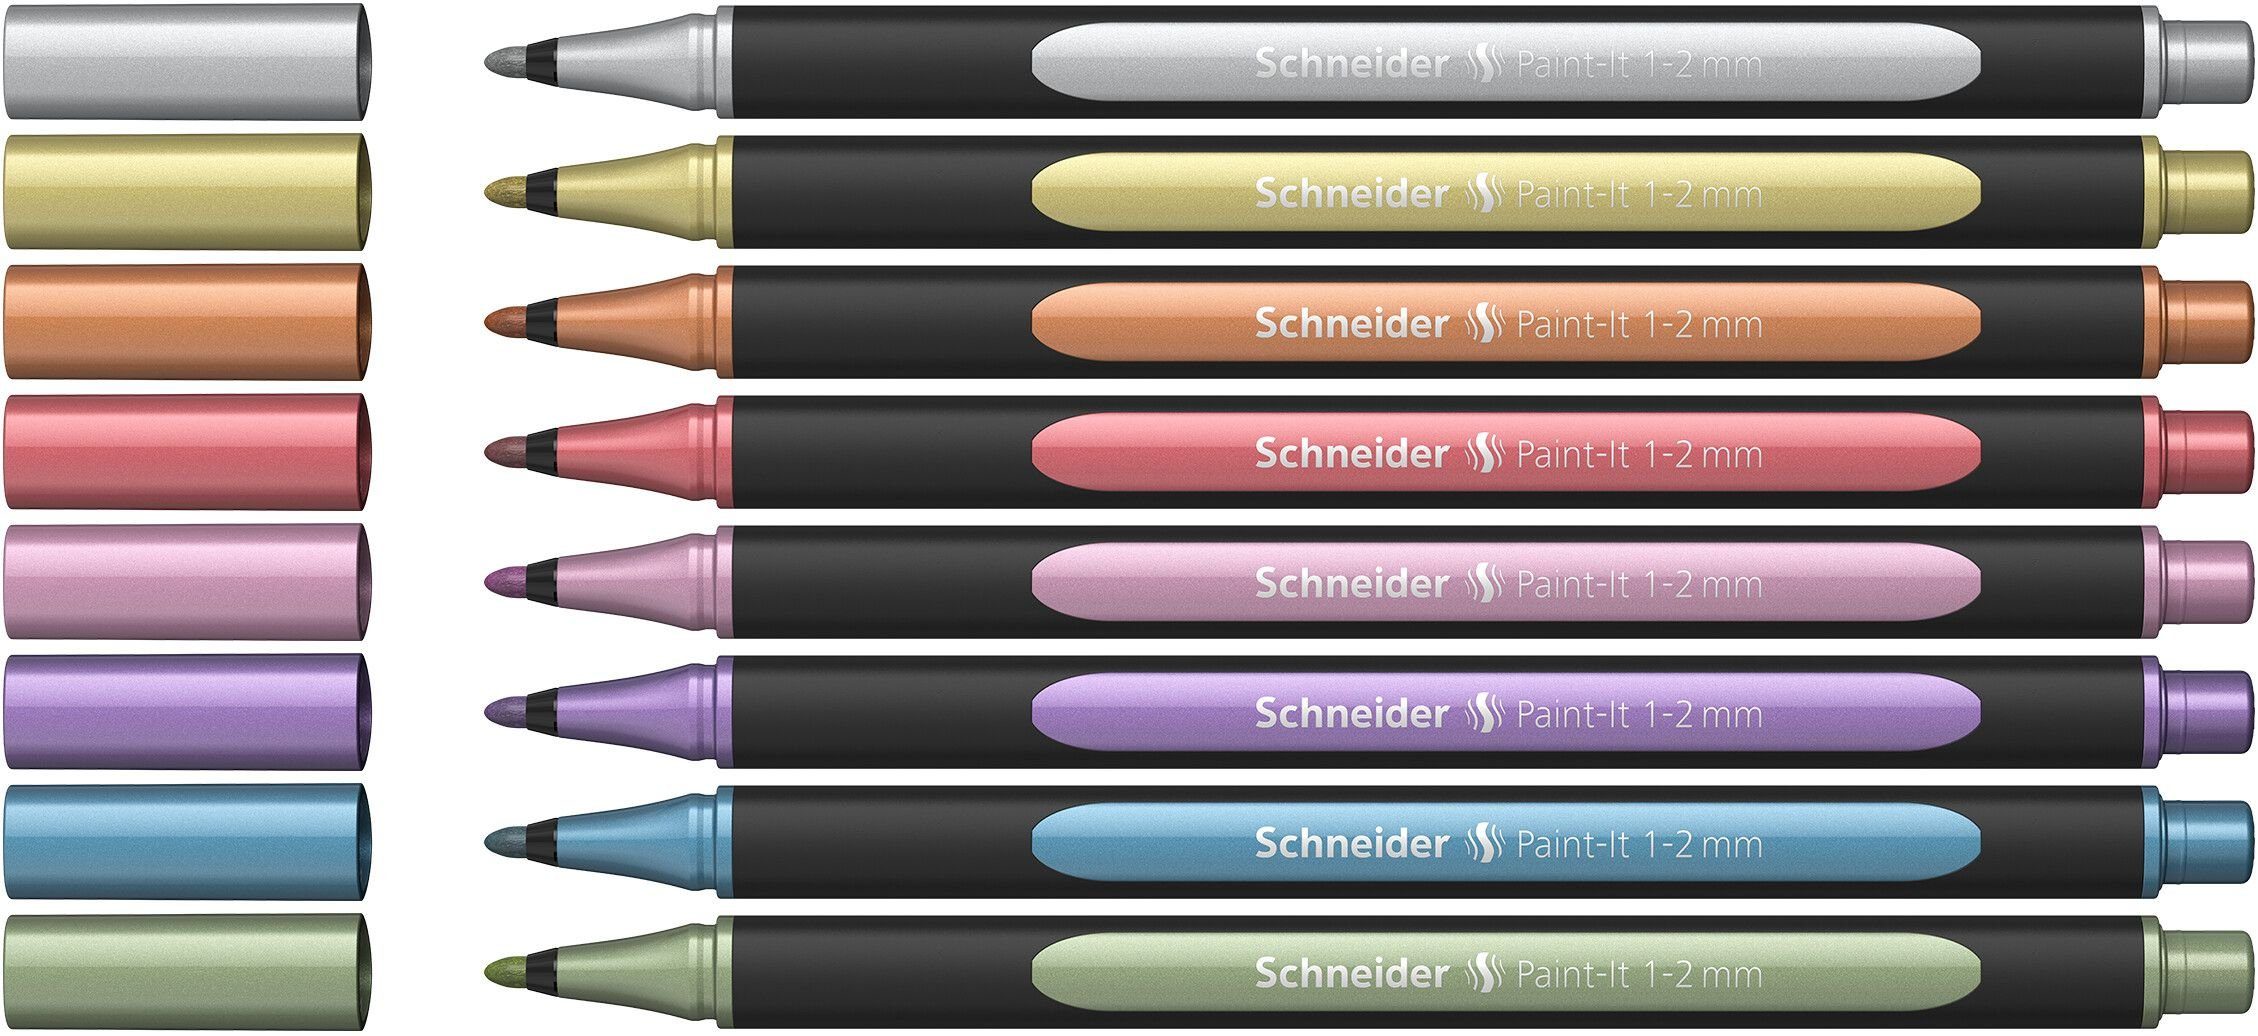 SCHNEIDER Fineliner 8 Schneider 020 Fineliner farbsortiert 1,0 - 2,0 mm